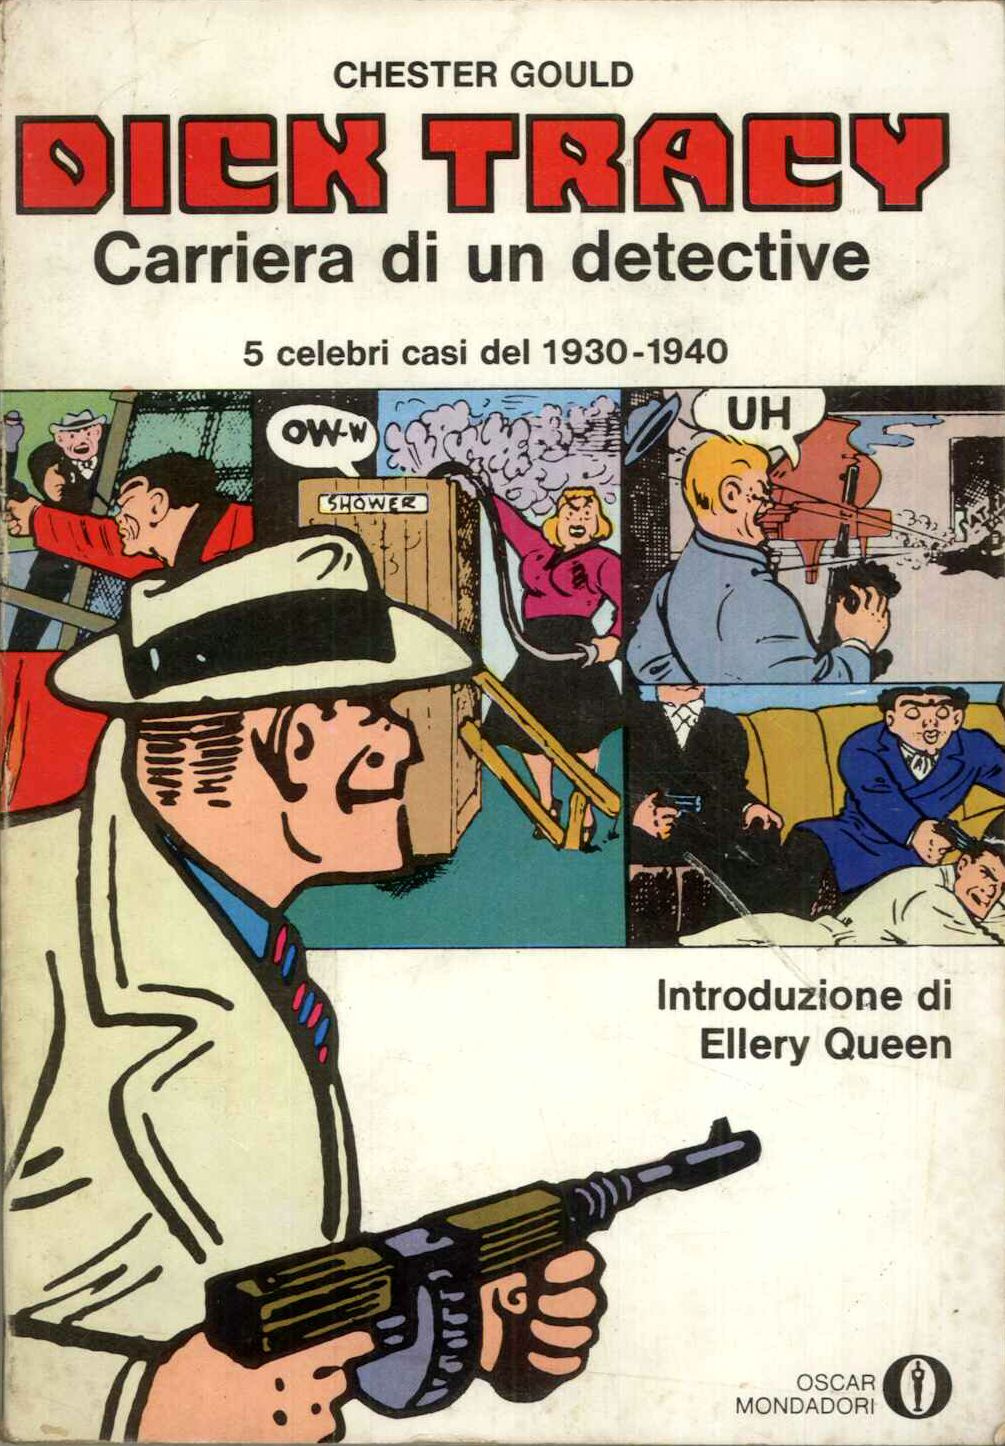 Dick Tracy- Carriera di un detective, 5 celebri casi 1930-1940